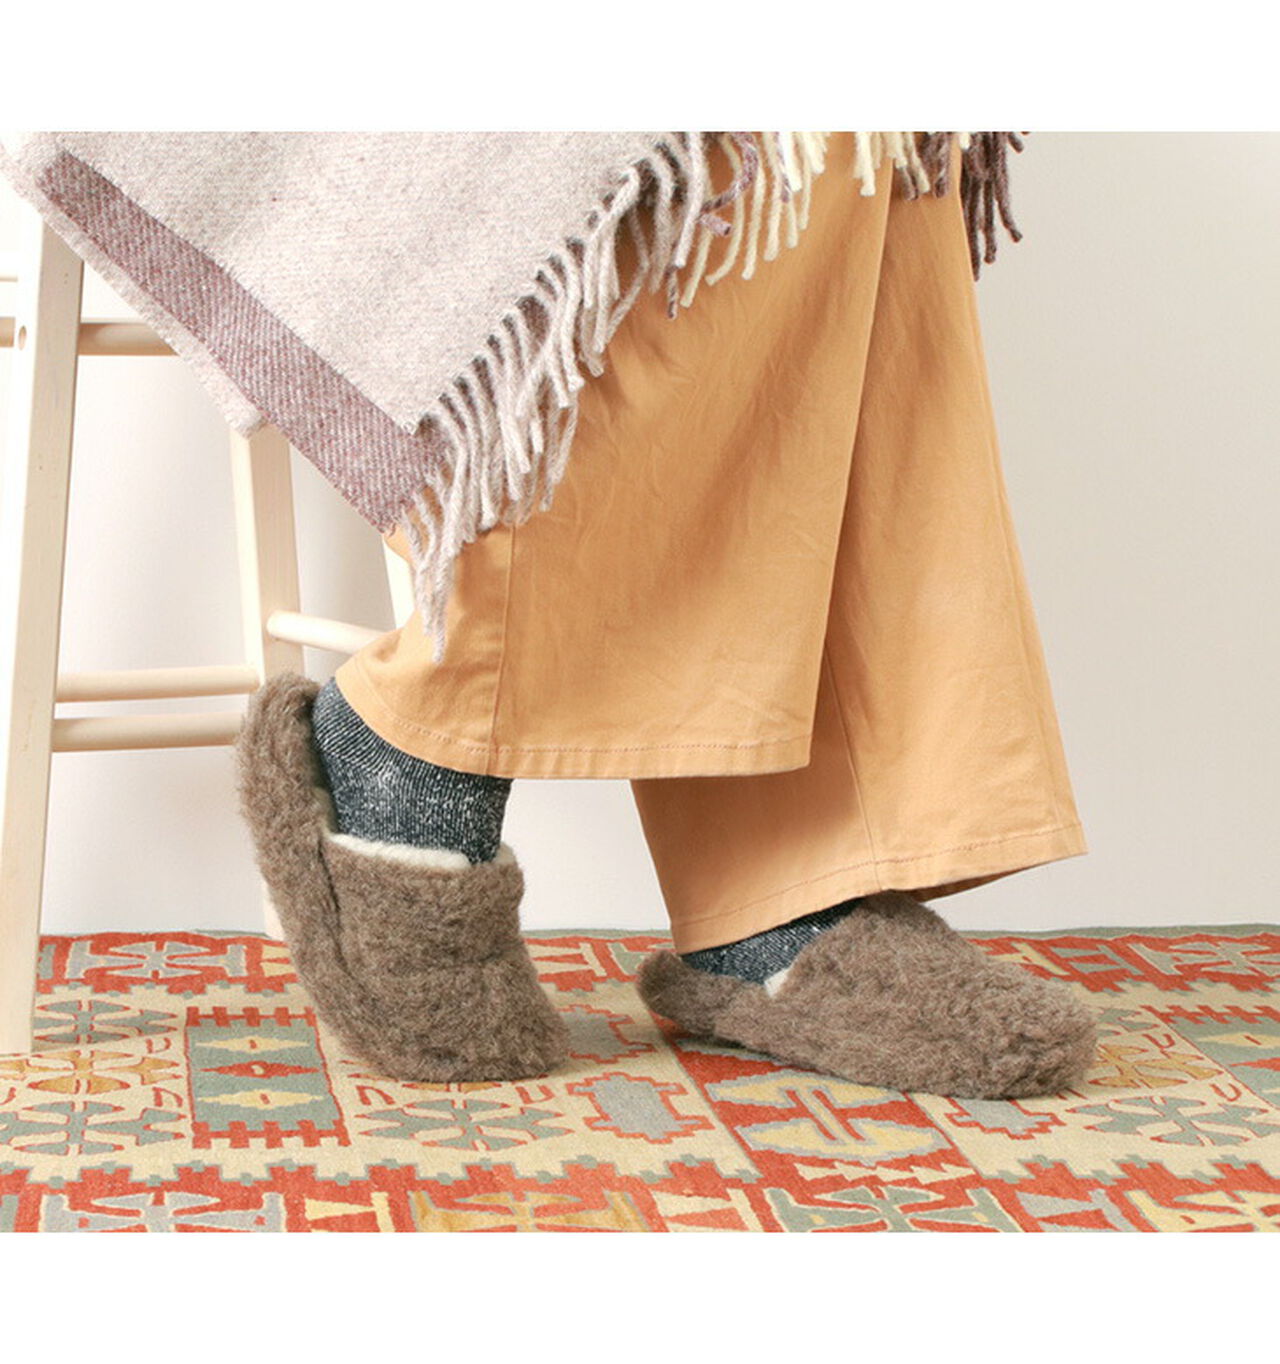 Boa Wool Basic Slippers,, large image number 5